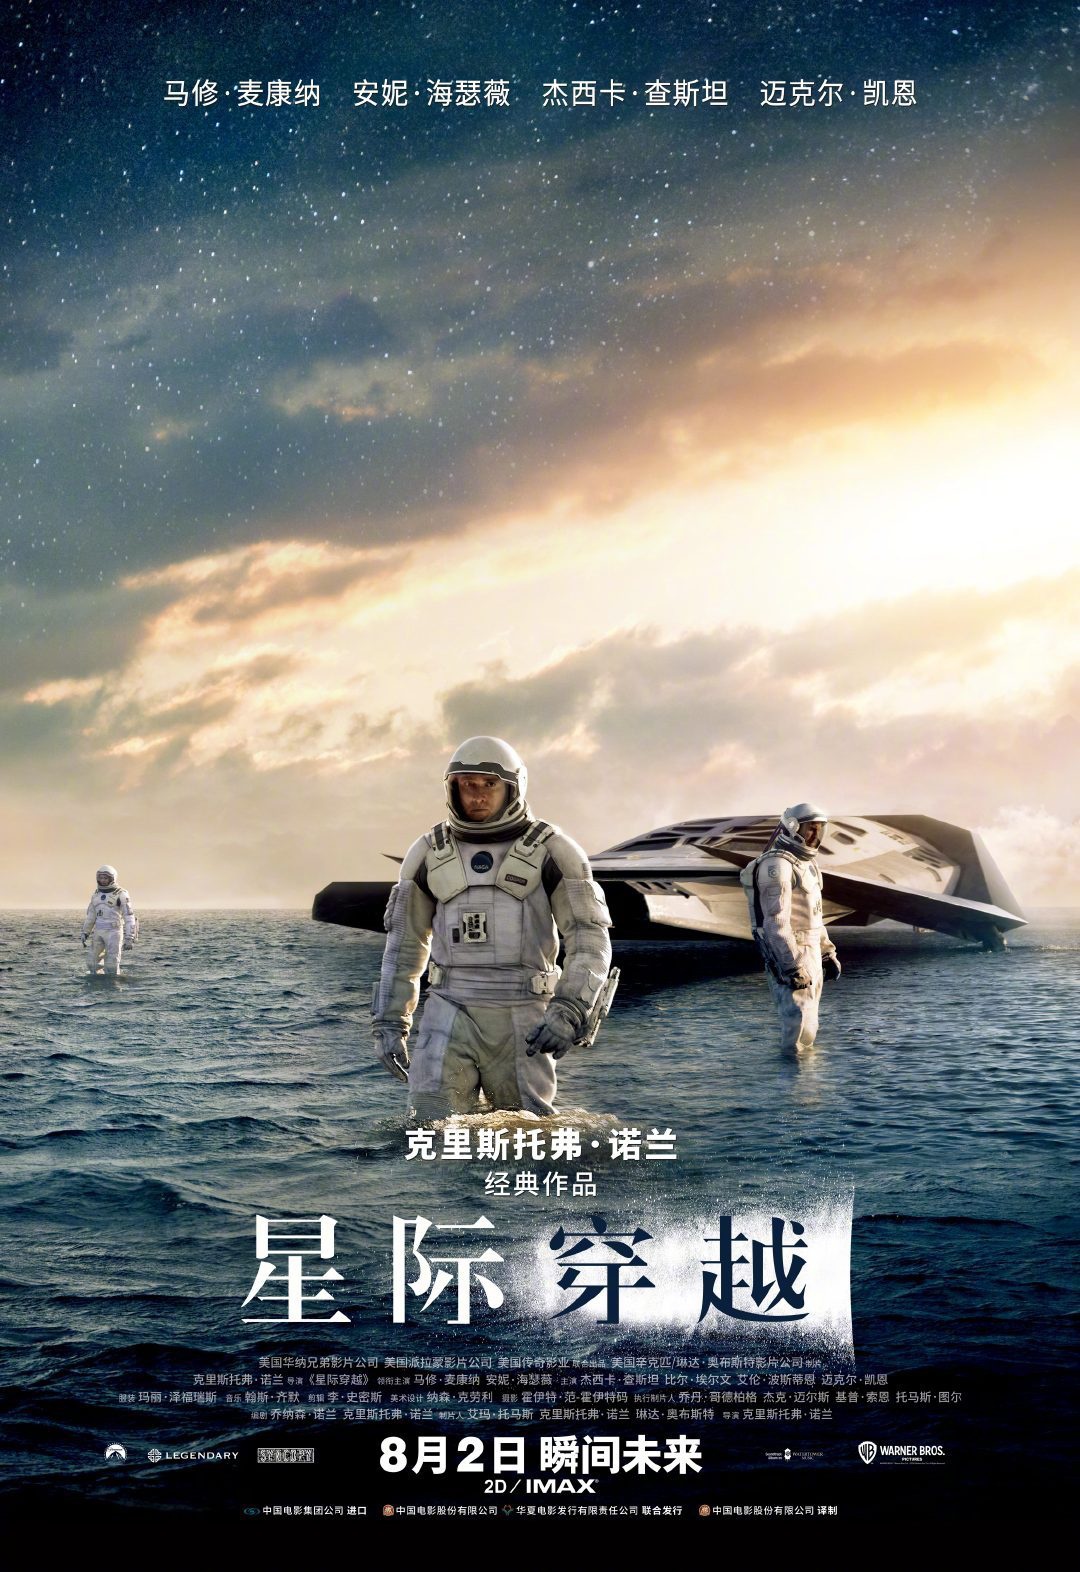 诺兰《星际穿越》8.2海内重映 包括IMAX版本